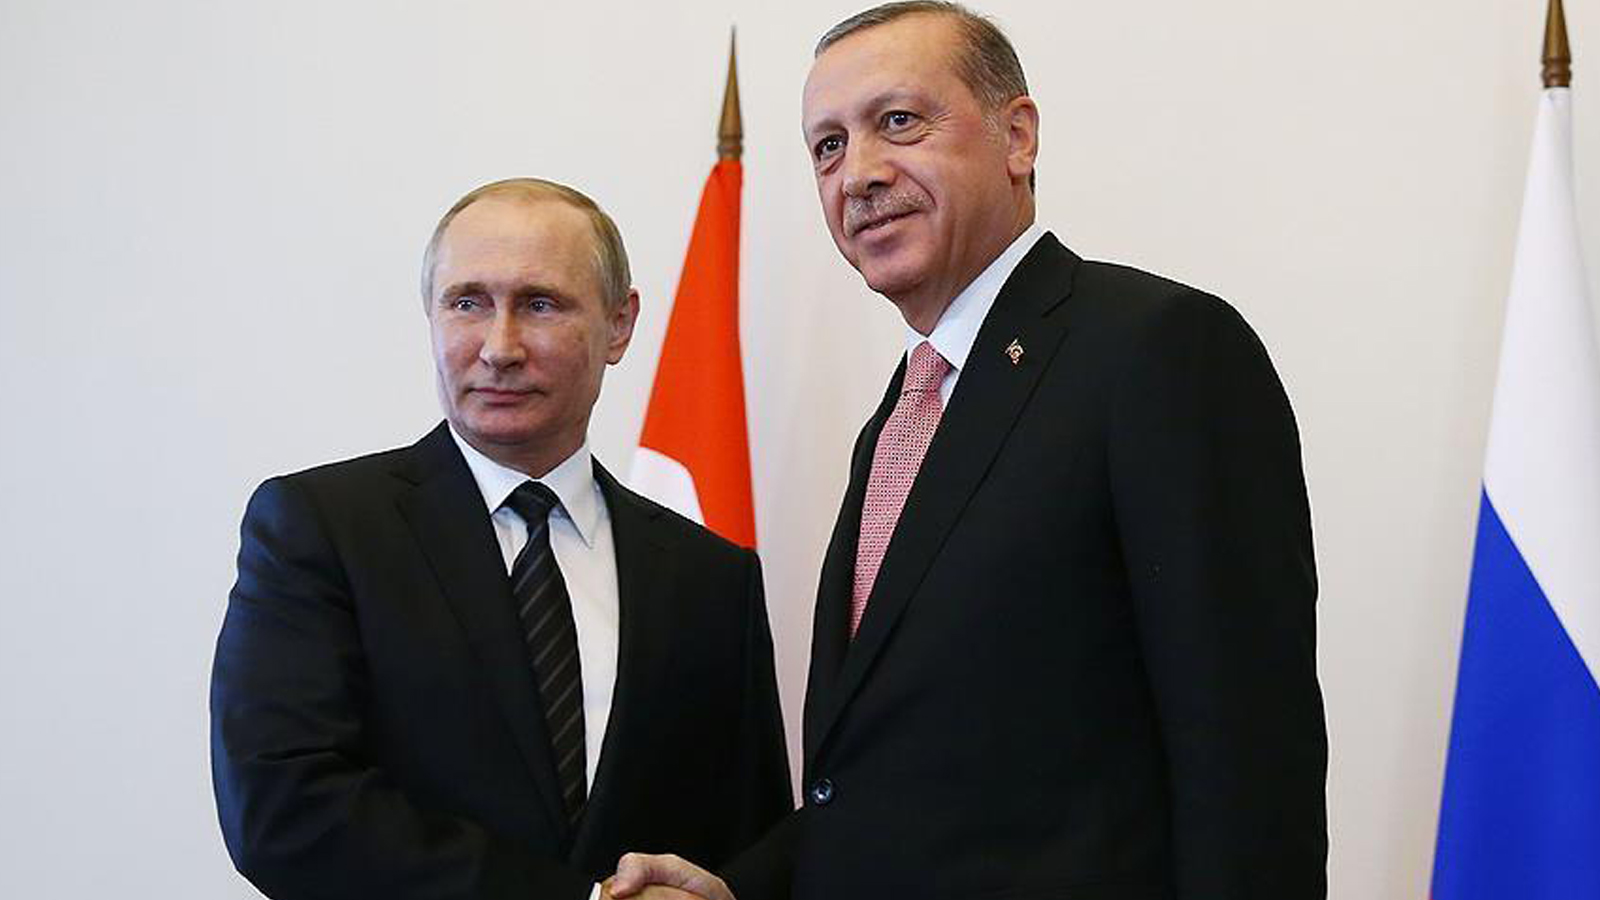 كيف سيعزز التوغل التركي نفوذ روسيا في المنطقة؟